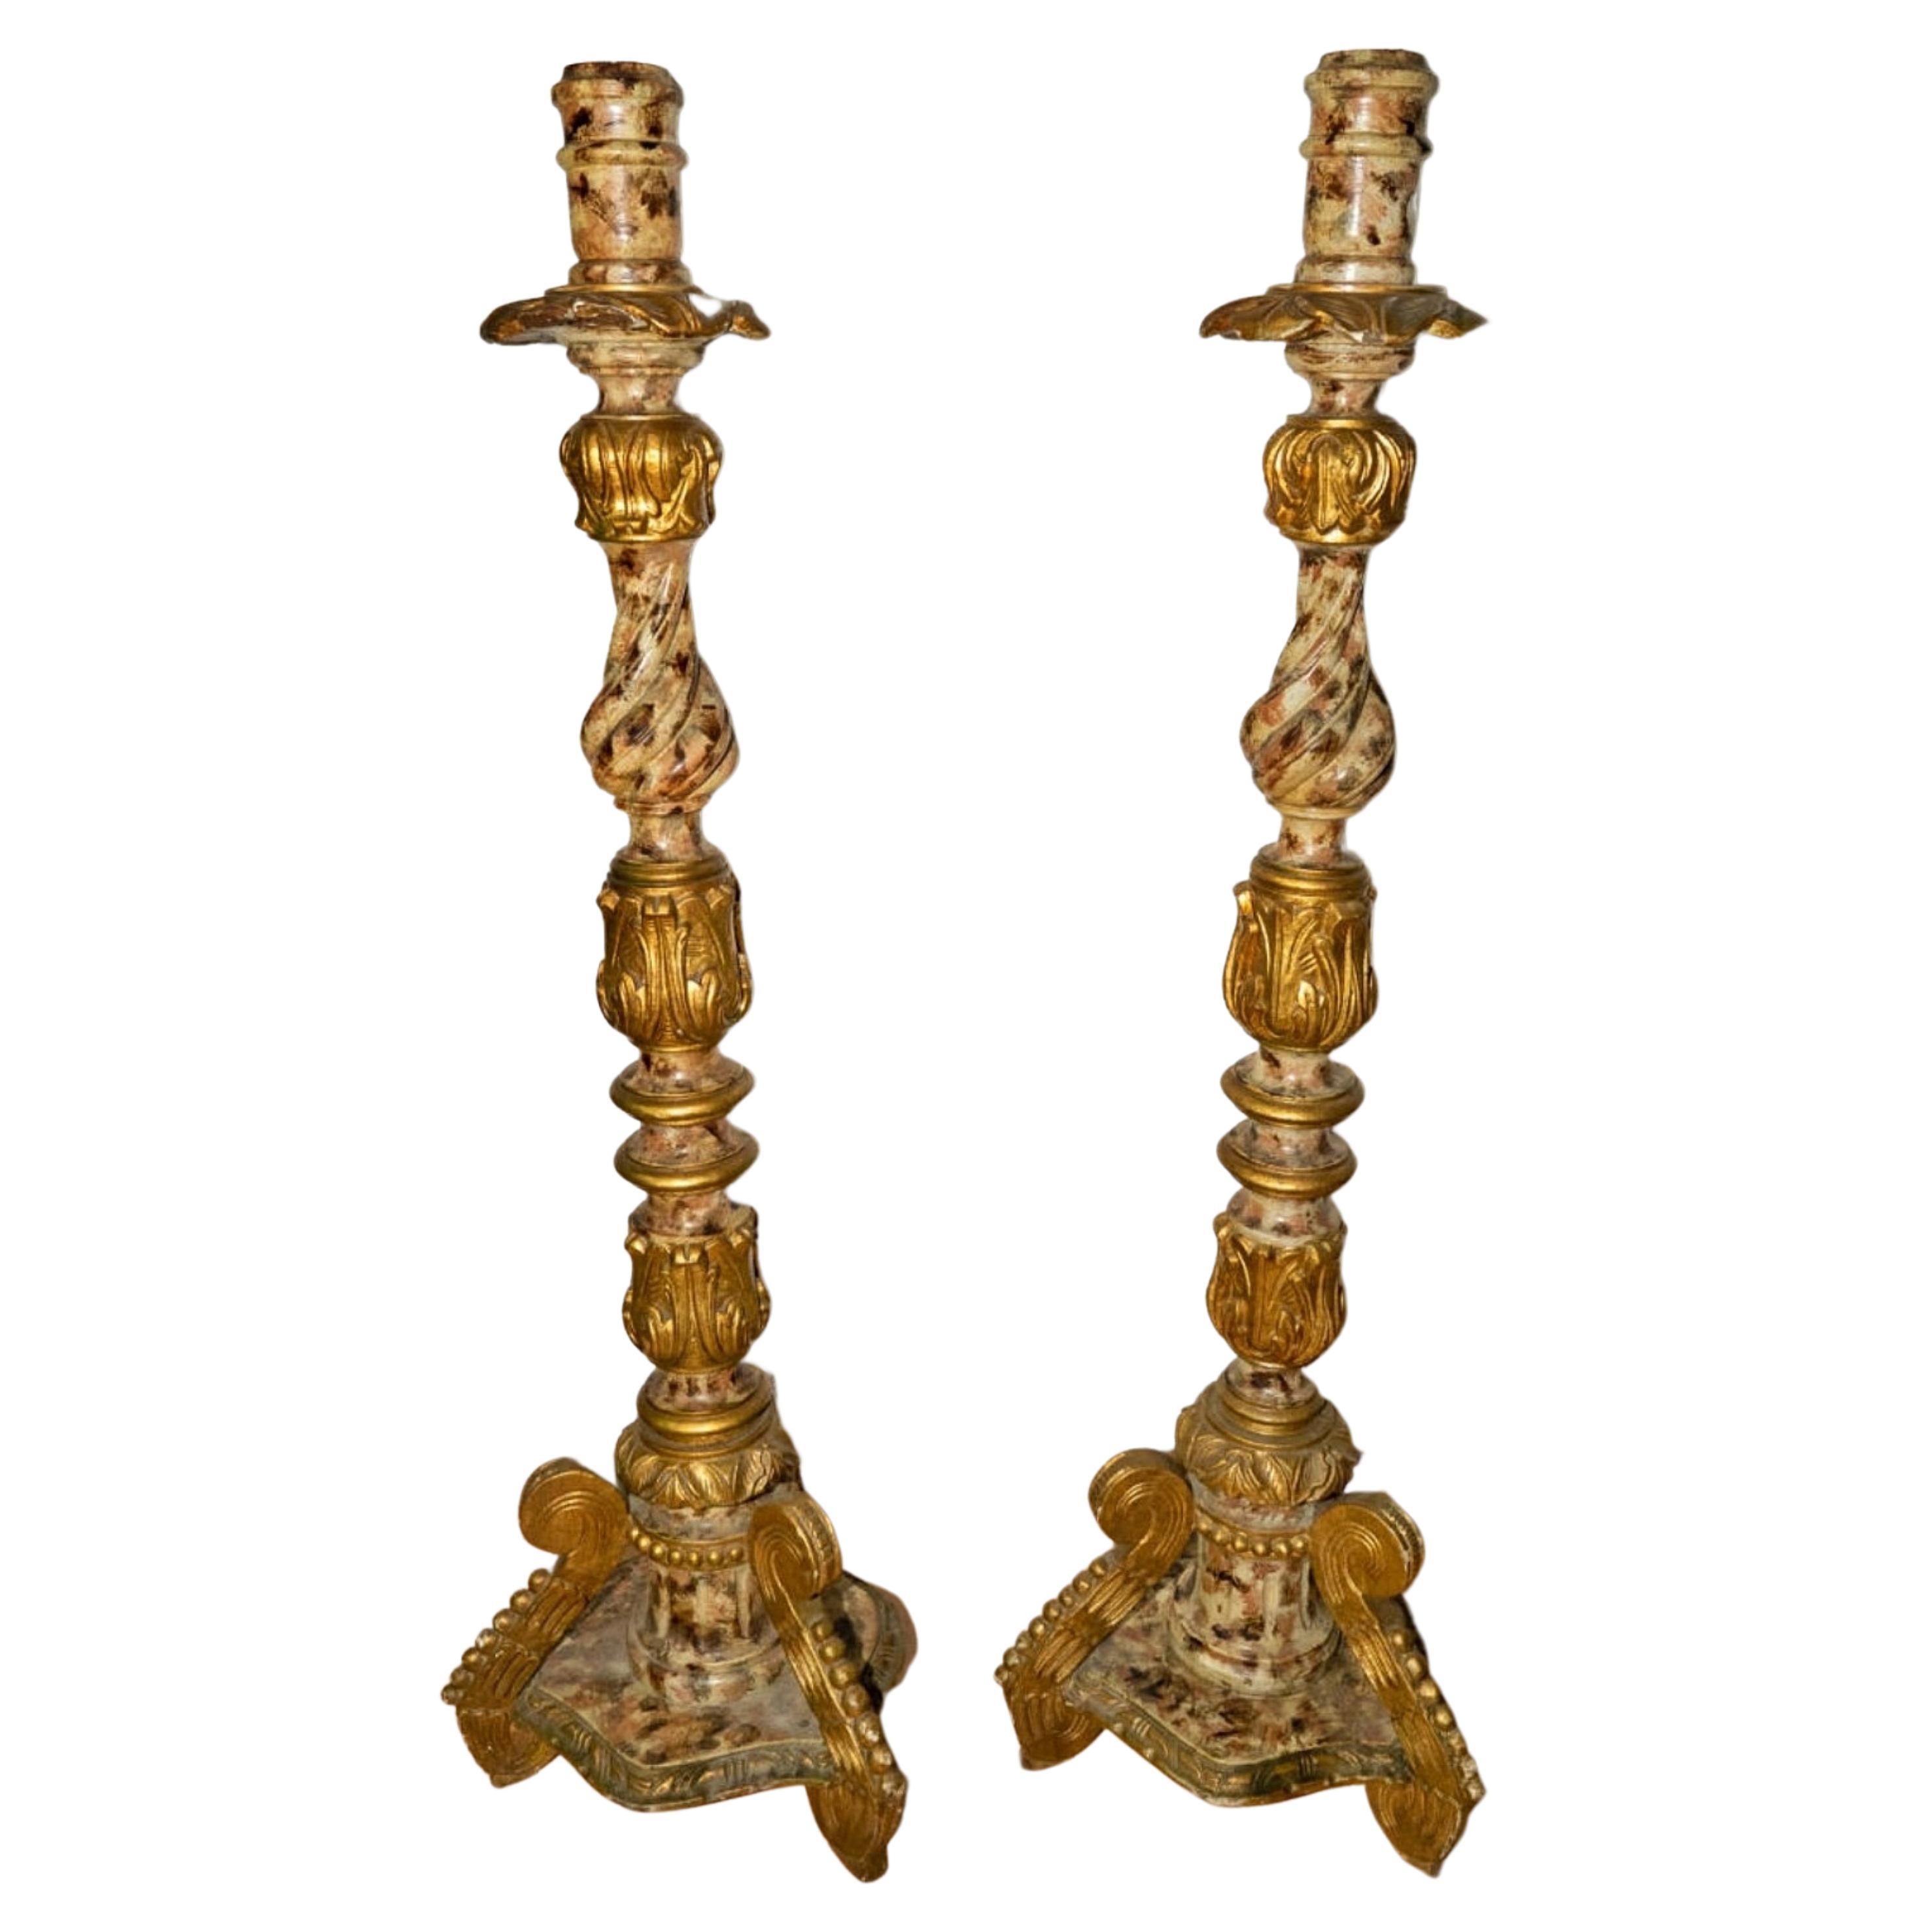 Paire de chandeliers espagnols du 18ème siècle